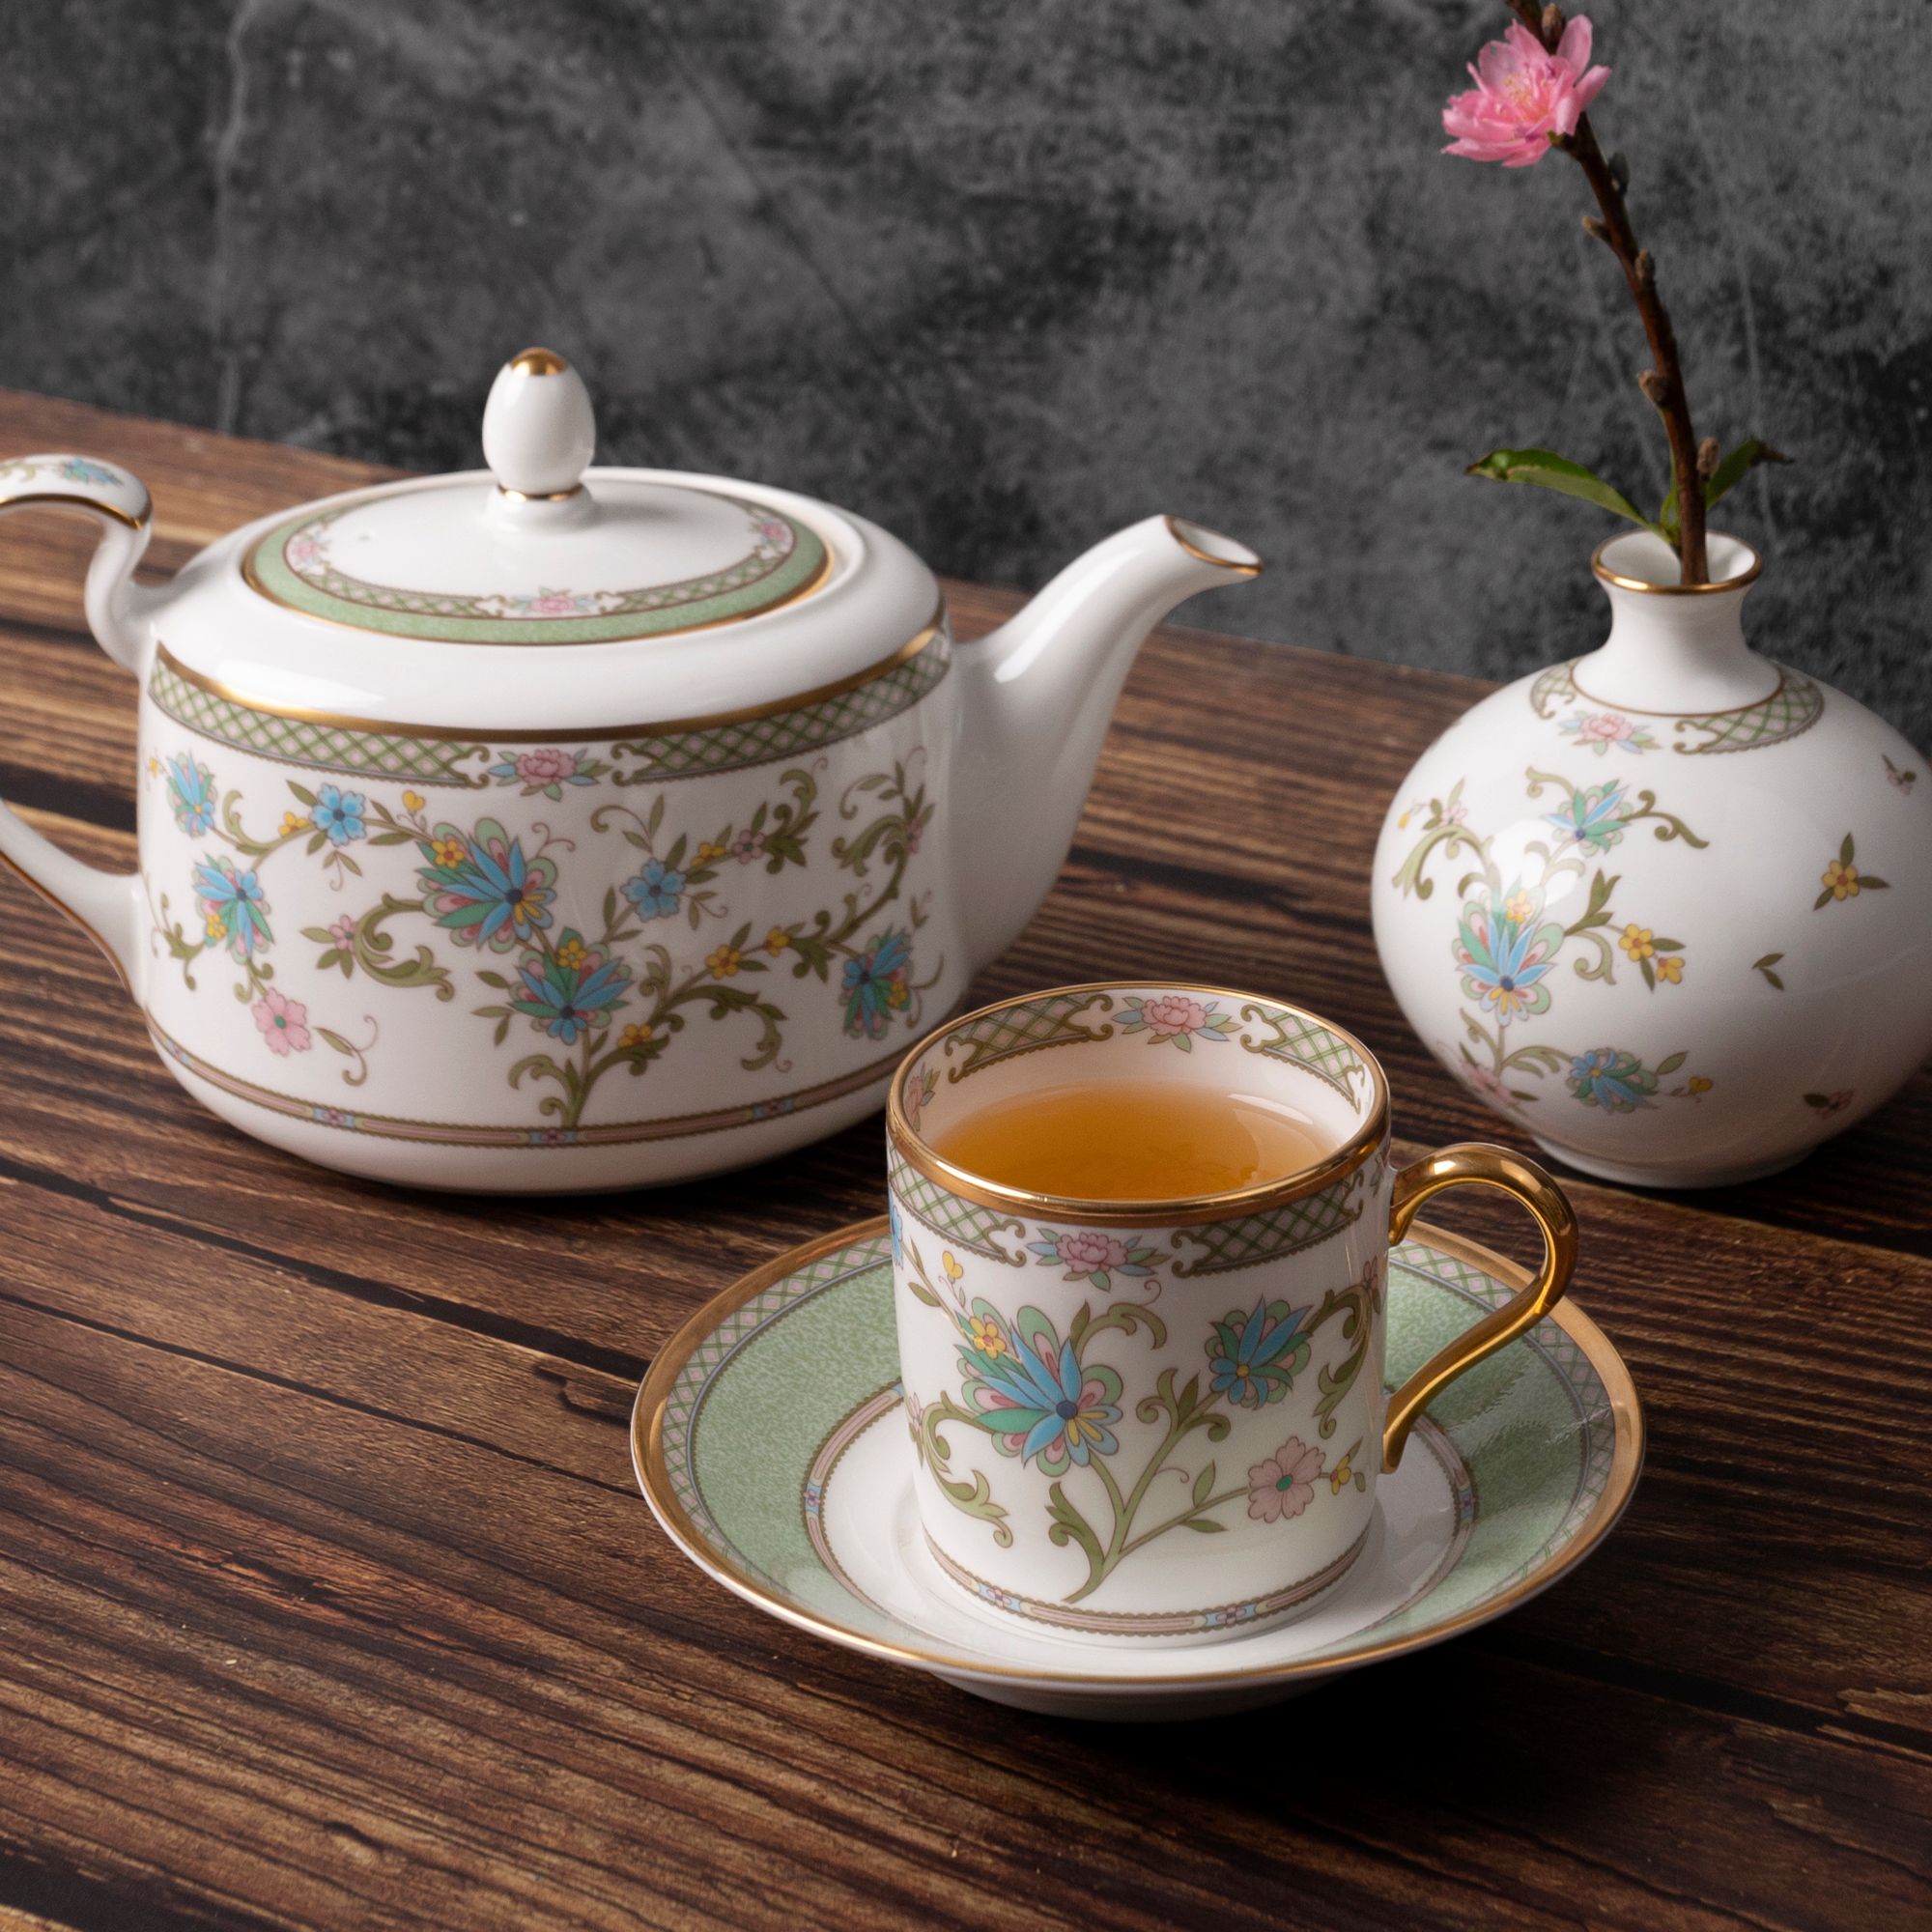  Bộ ấm chén uống trà 13 món (ấm nhỏ 600ml) sứ xương cao cấp | Yoshino 9983J-T014XS 